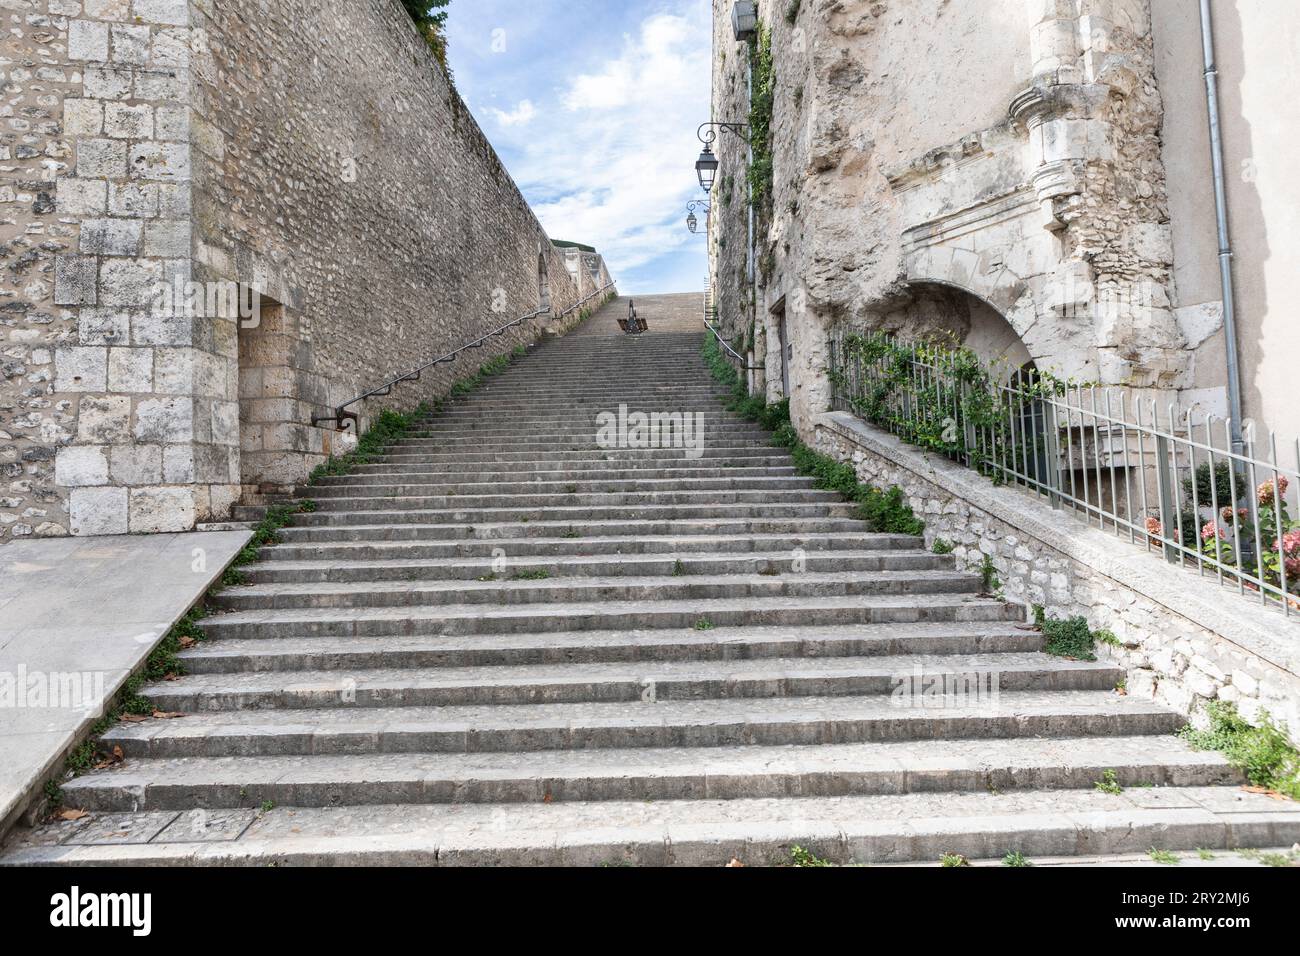 Una lunga e ripida scalinata in pietra a Blois, Francia Foto Stock